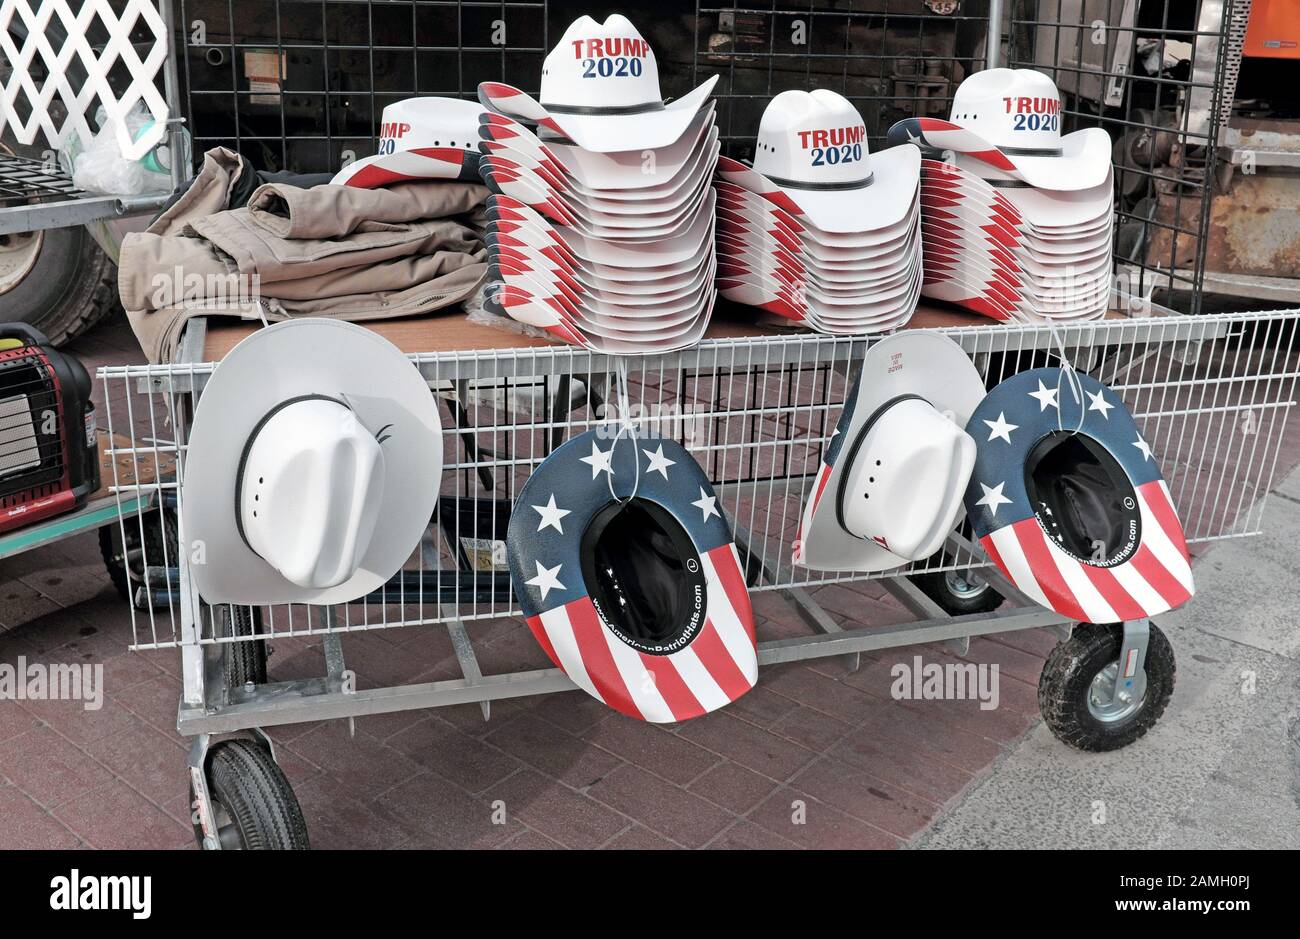 Inspiriert patrotic Cowboyhüte mit den Farben der US-Flagge und Trump 2020 für den Verkauf außerhalb eines Trumpf 2020 Kampagne zur Wiederwahl Rallye geschrieben. Stockfoto